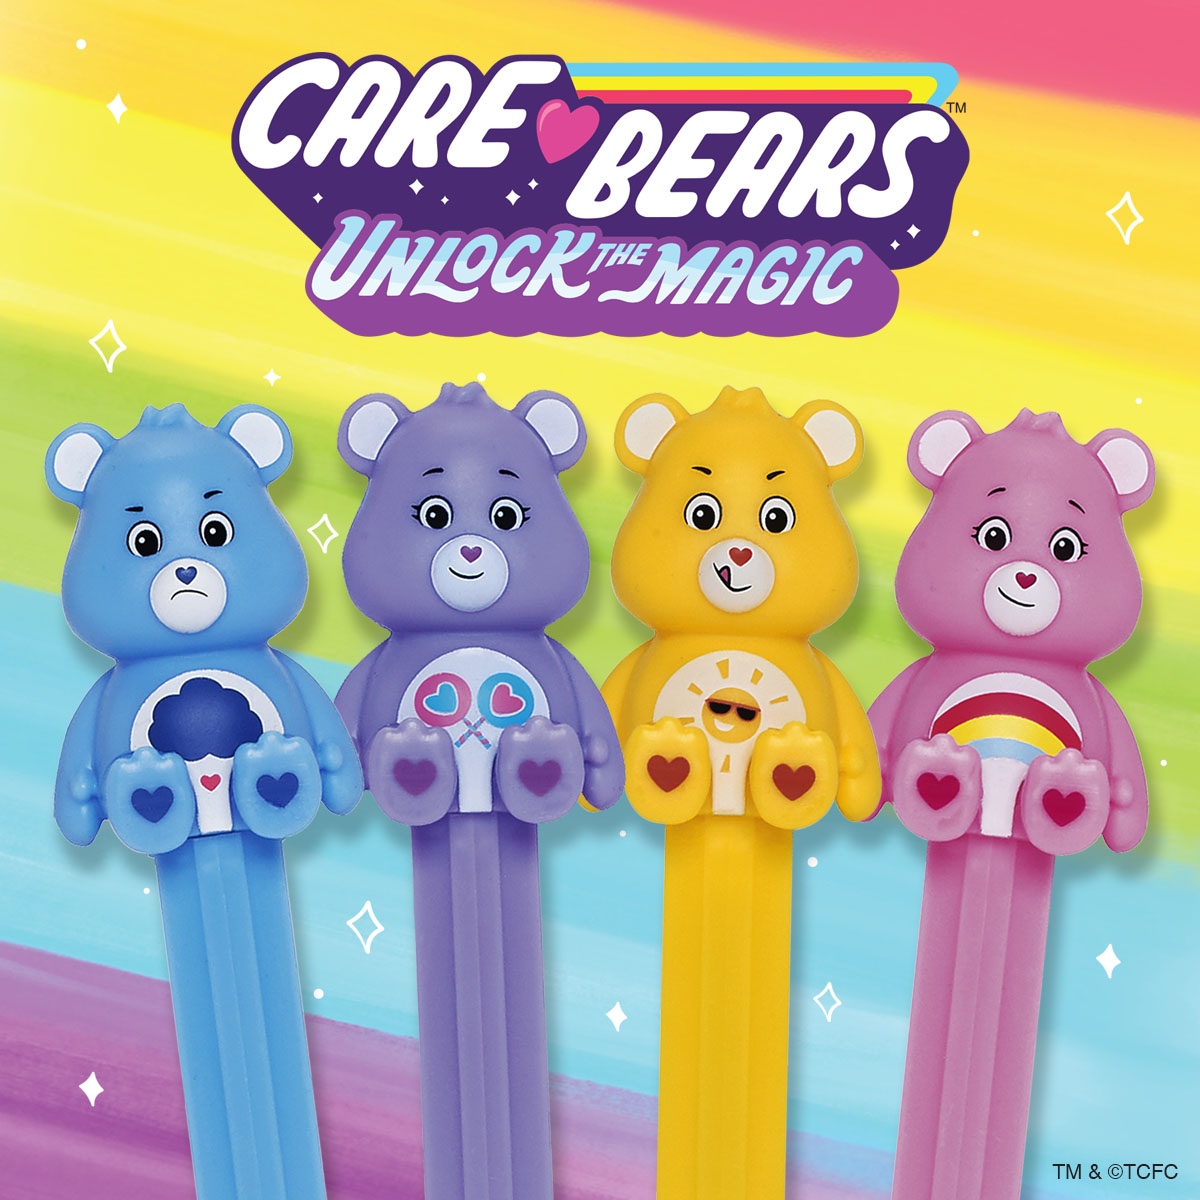 Cheer Bear PEZ Dispenser & Candy, Care Bears